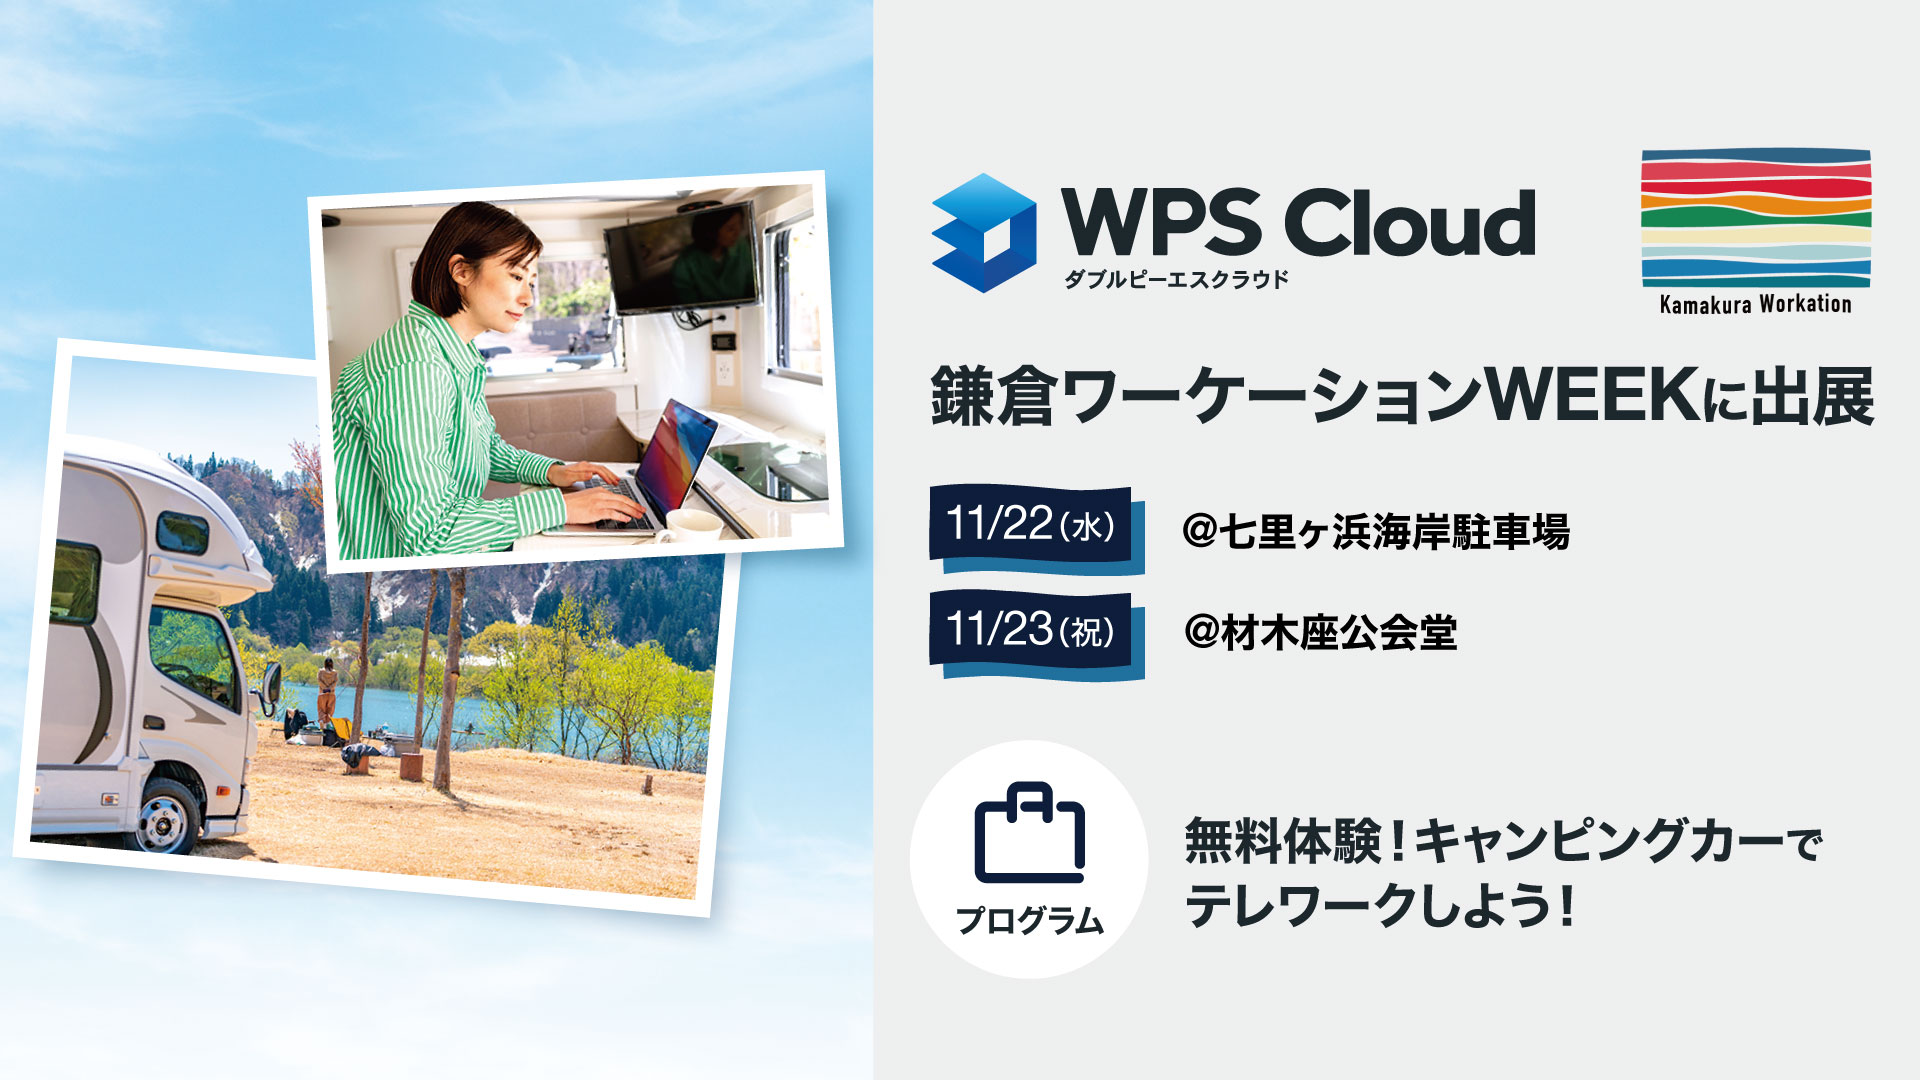 【11/22(水)、23(祝)】キングソフトが鎌倉ワーケーションWEEKにWPS Cloudキャンピングカーを出展します